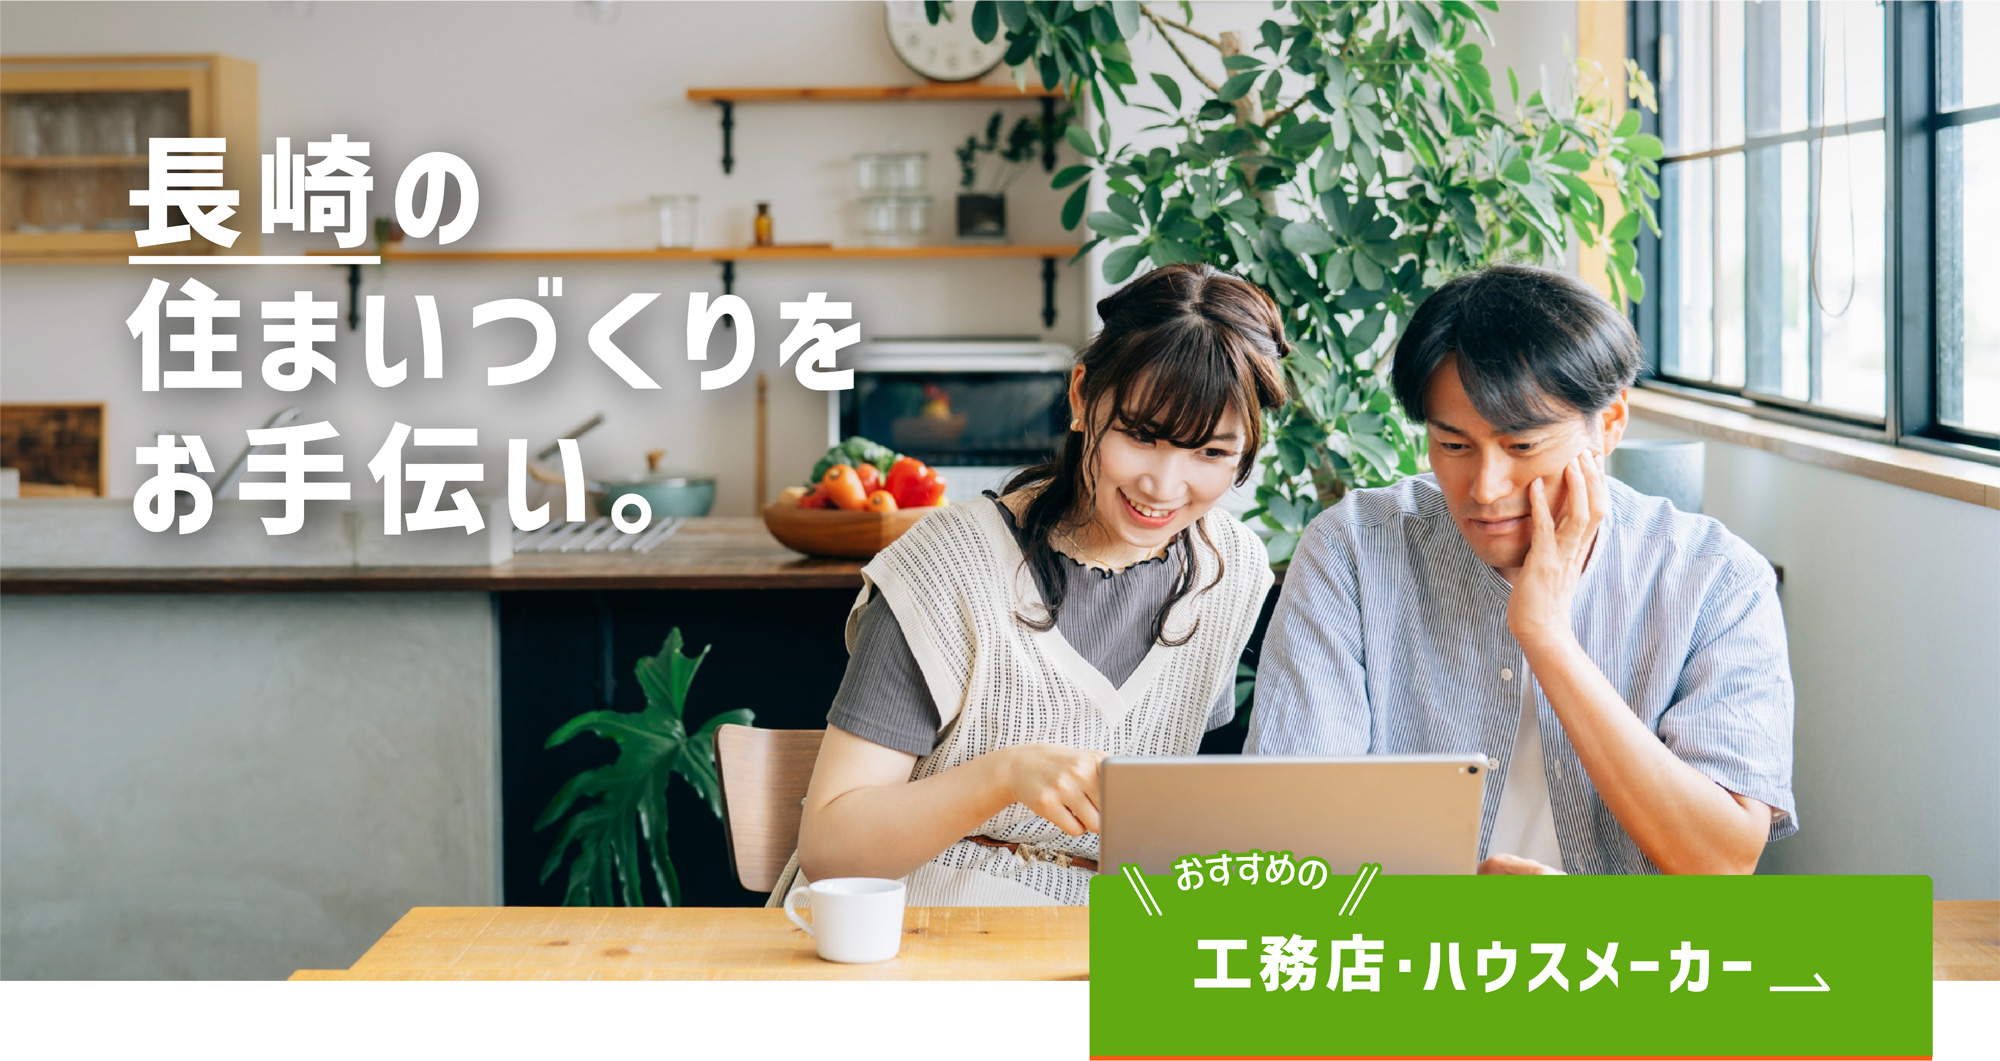 長崎ではじめて家を建てる人のための家づくり応援サイト「タテルヤ長崎」